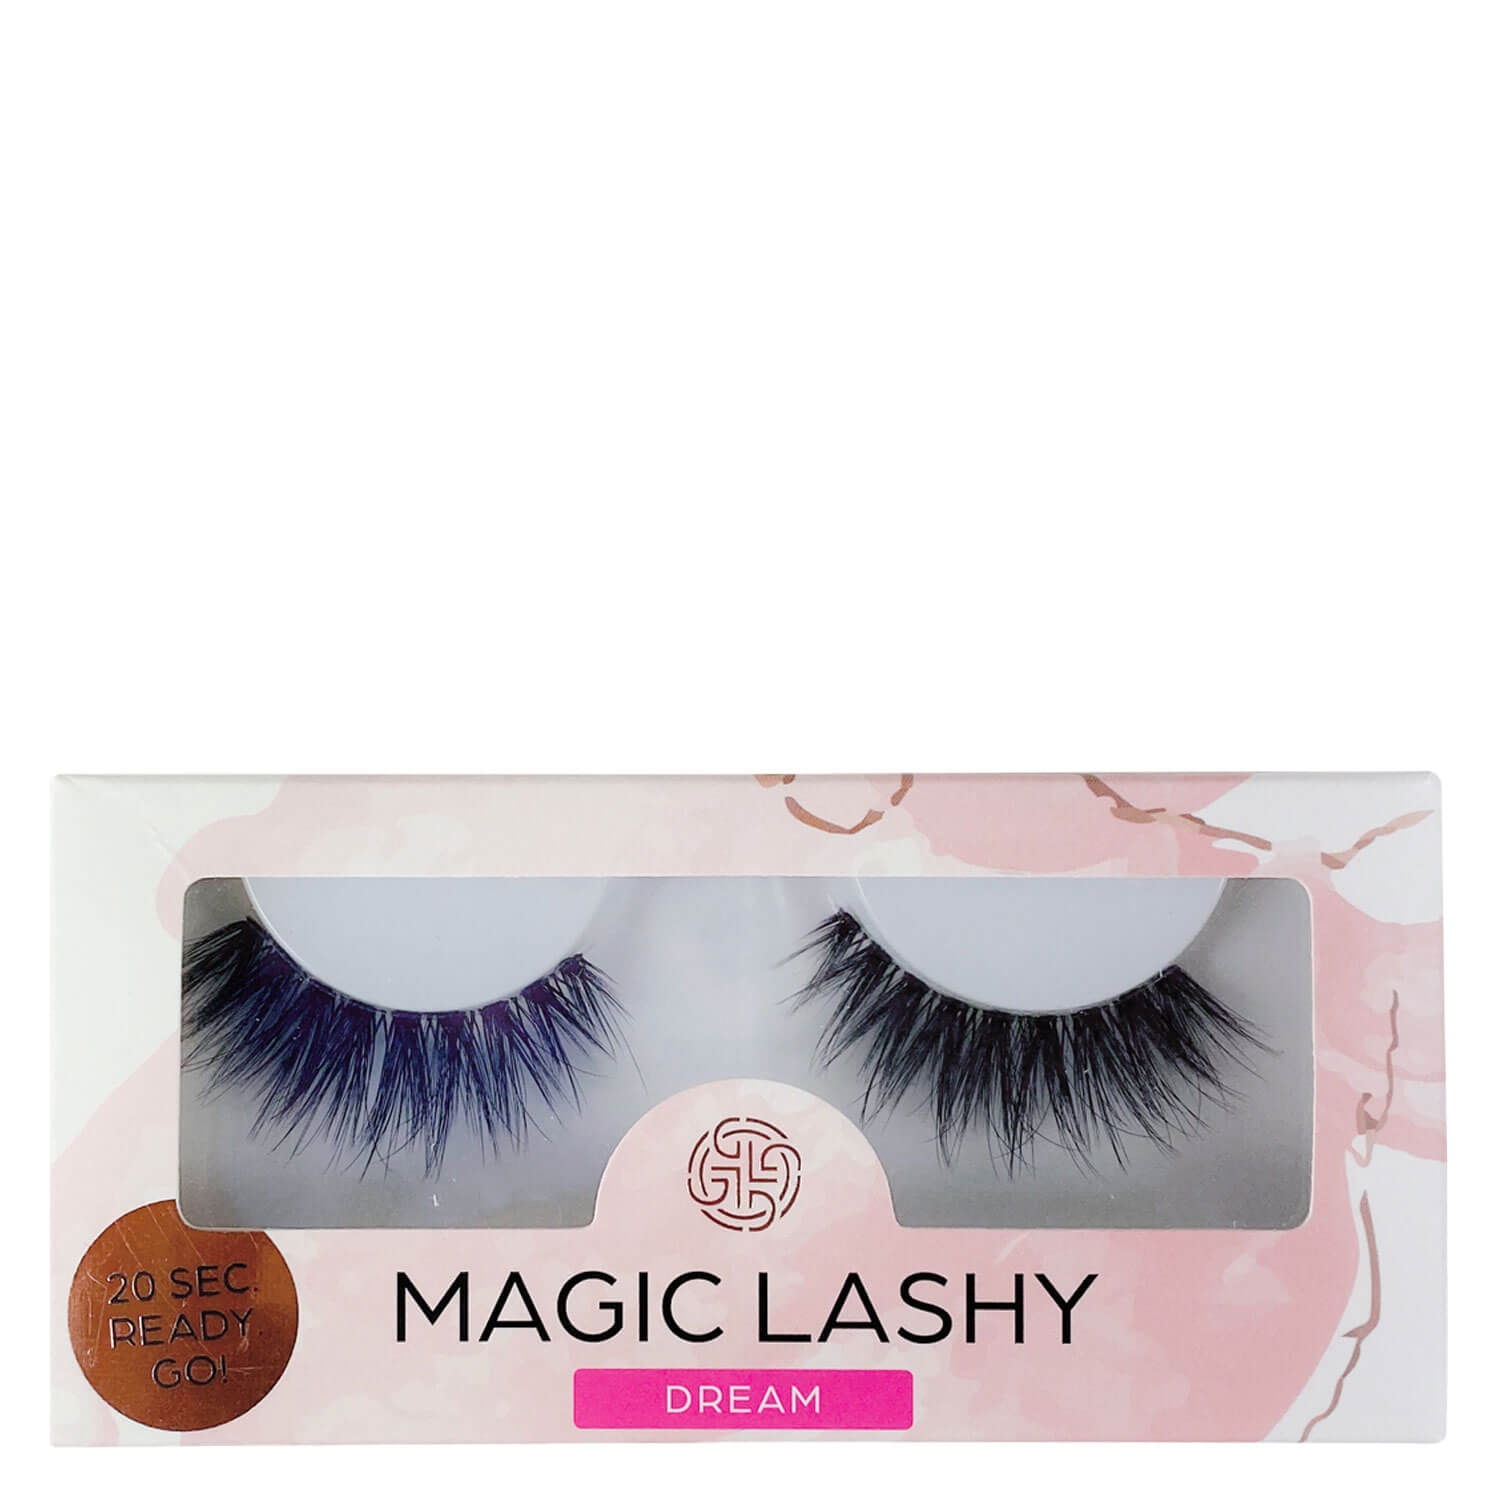 Product image from GL Beautycompany - Magic Lashy Dream